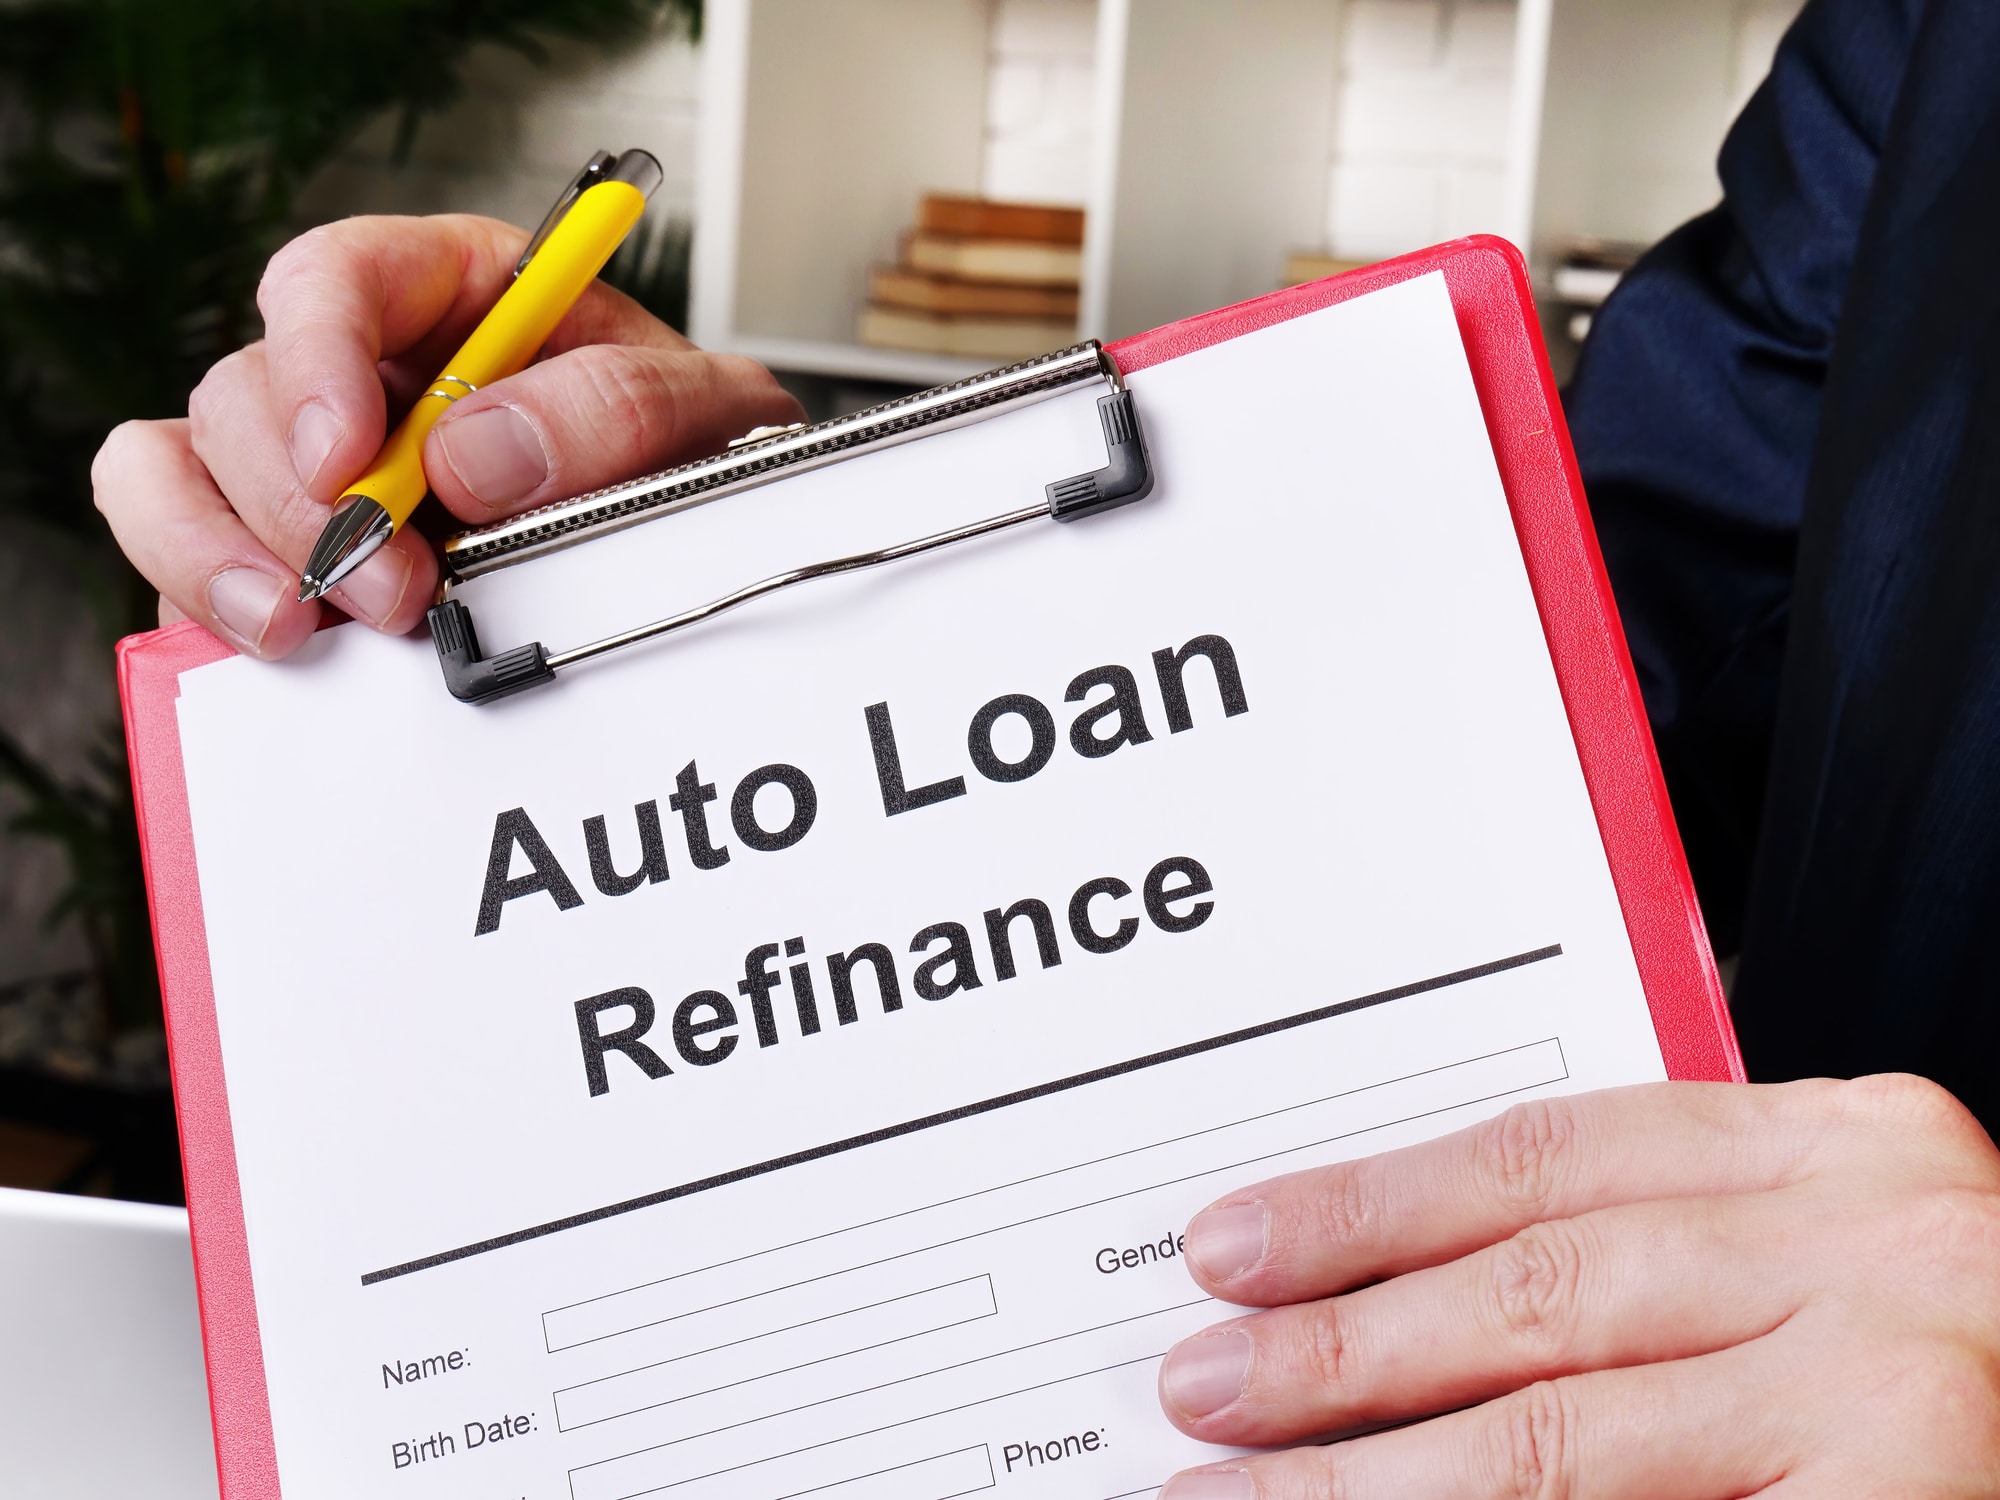 Auto loan refinance